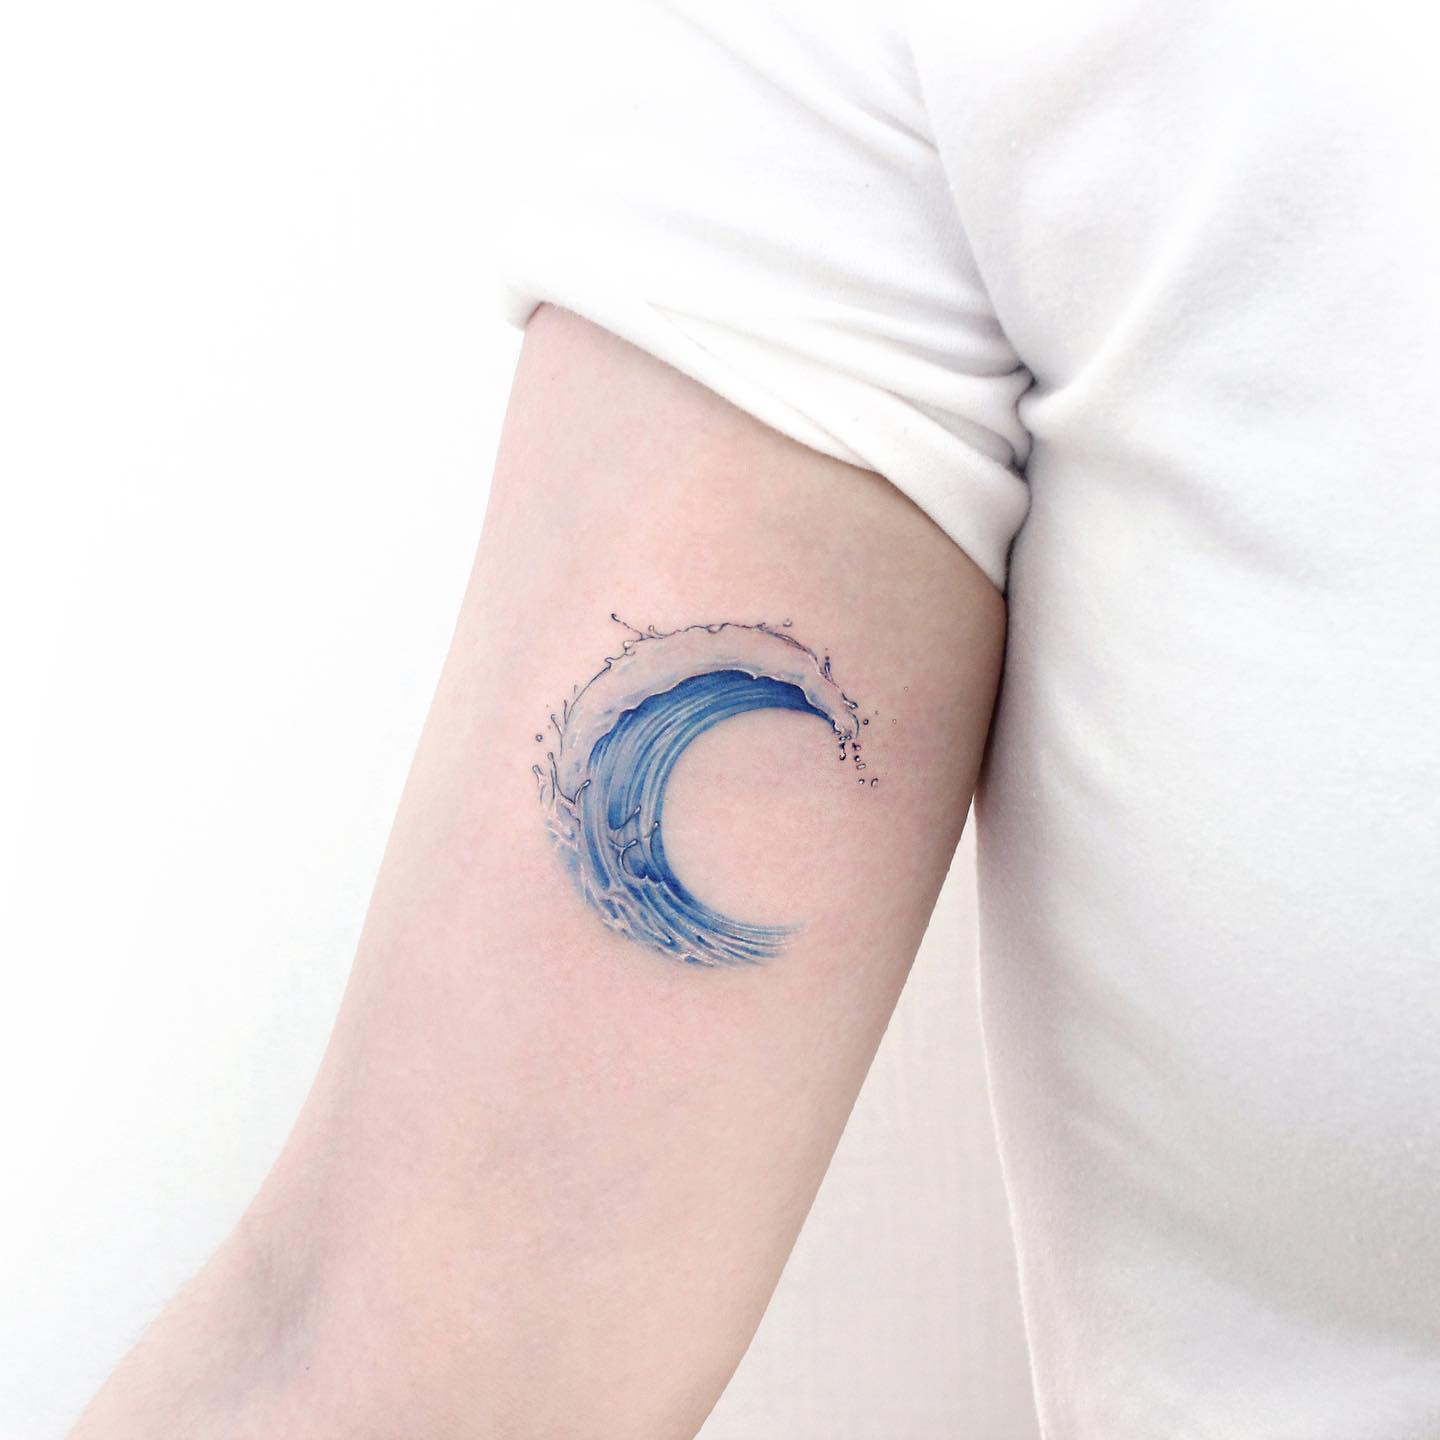 Wave tattoo by AntoniettaArnoneArts on DeviantArt